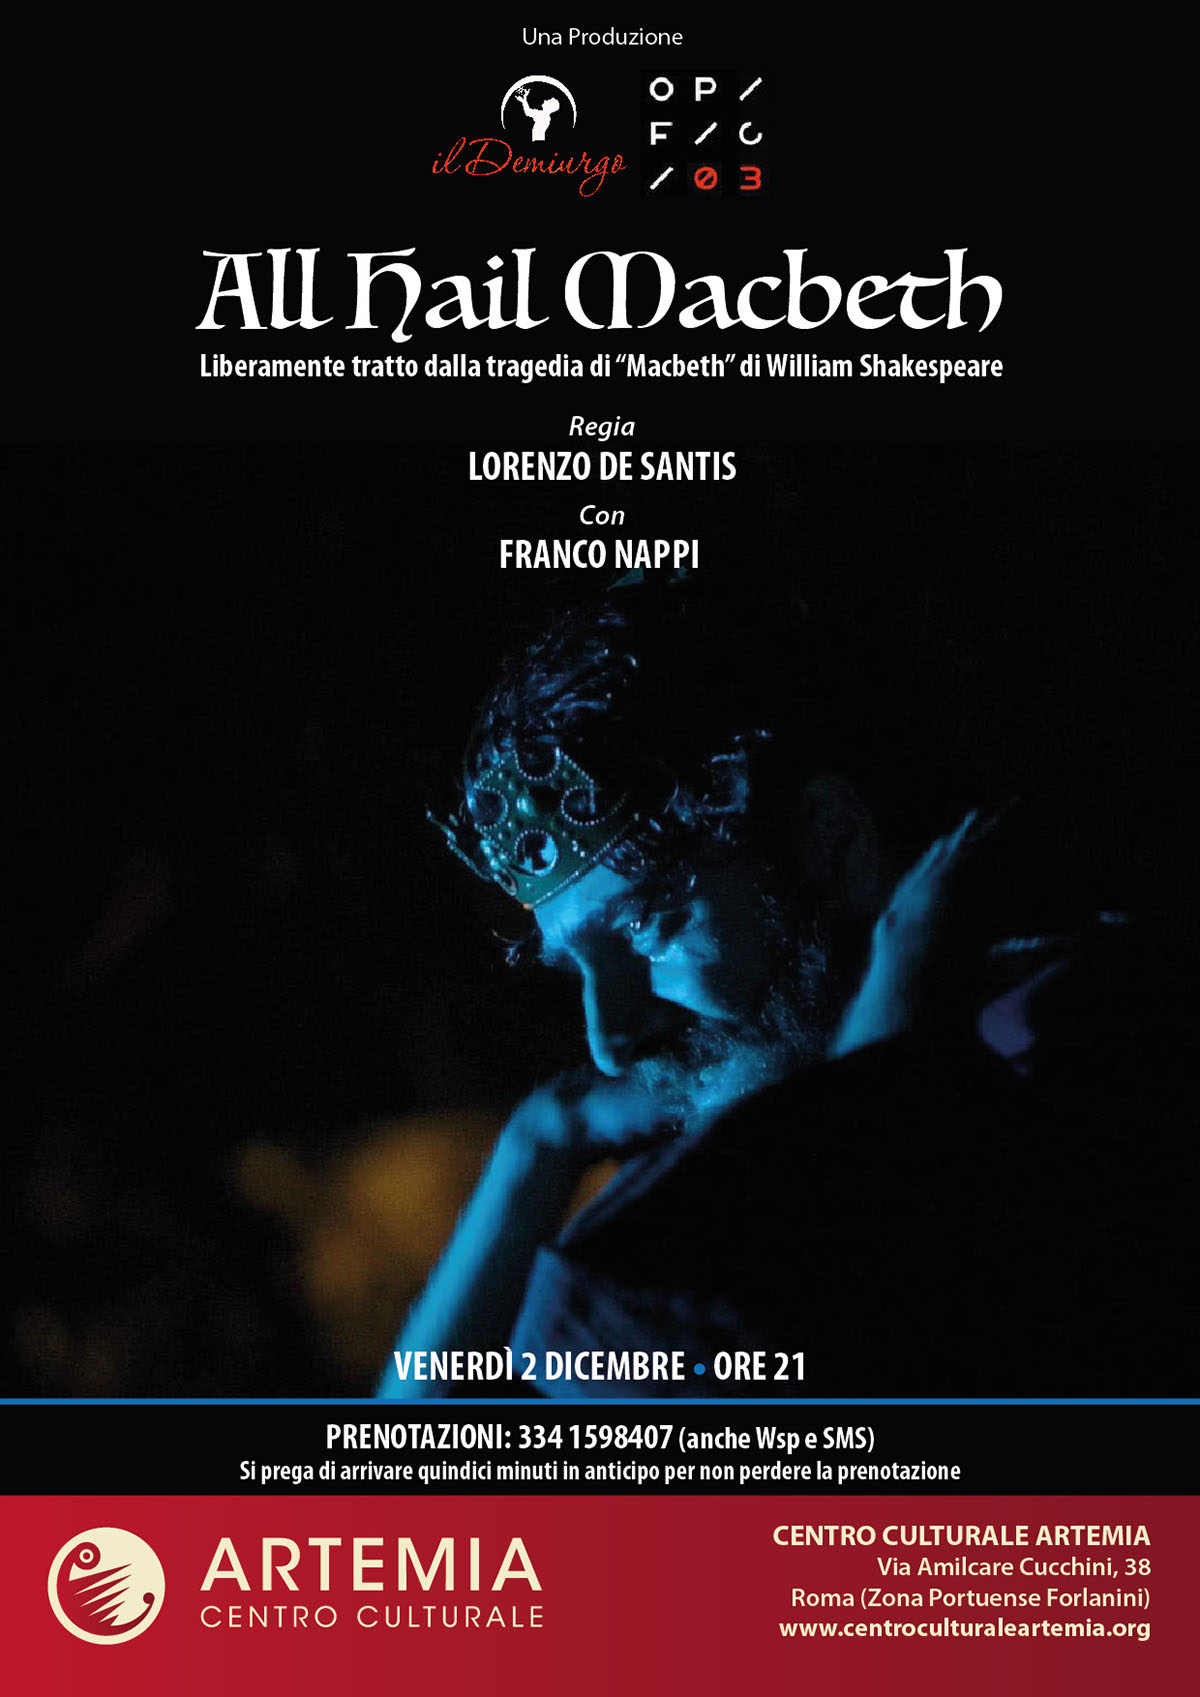 All Hail Macbeth